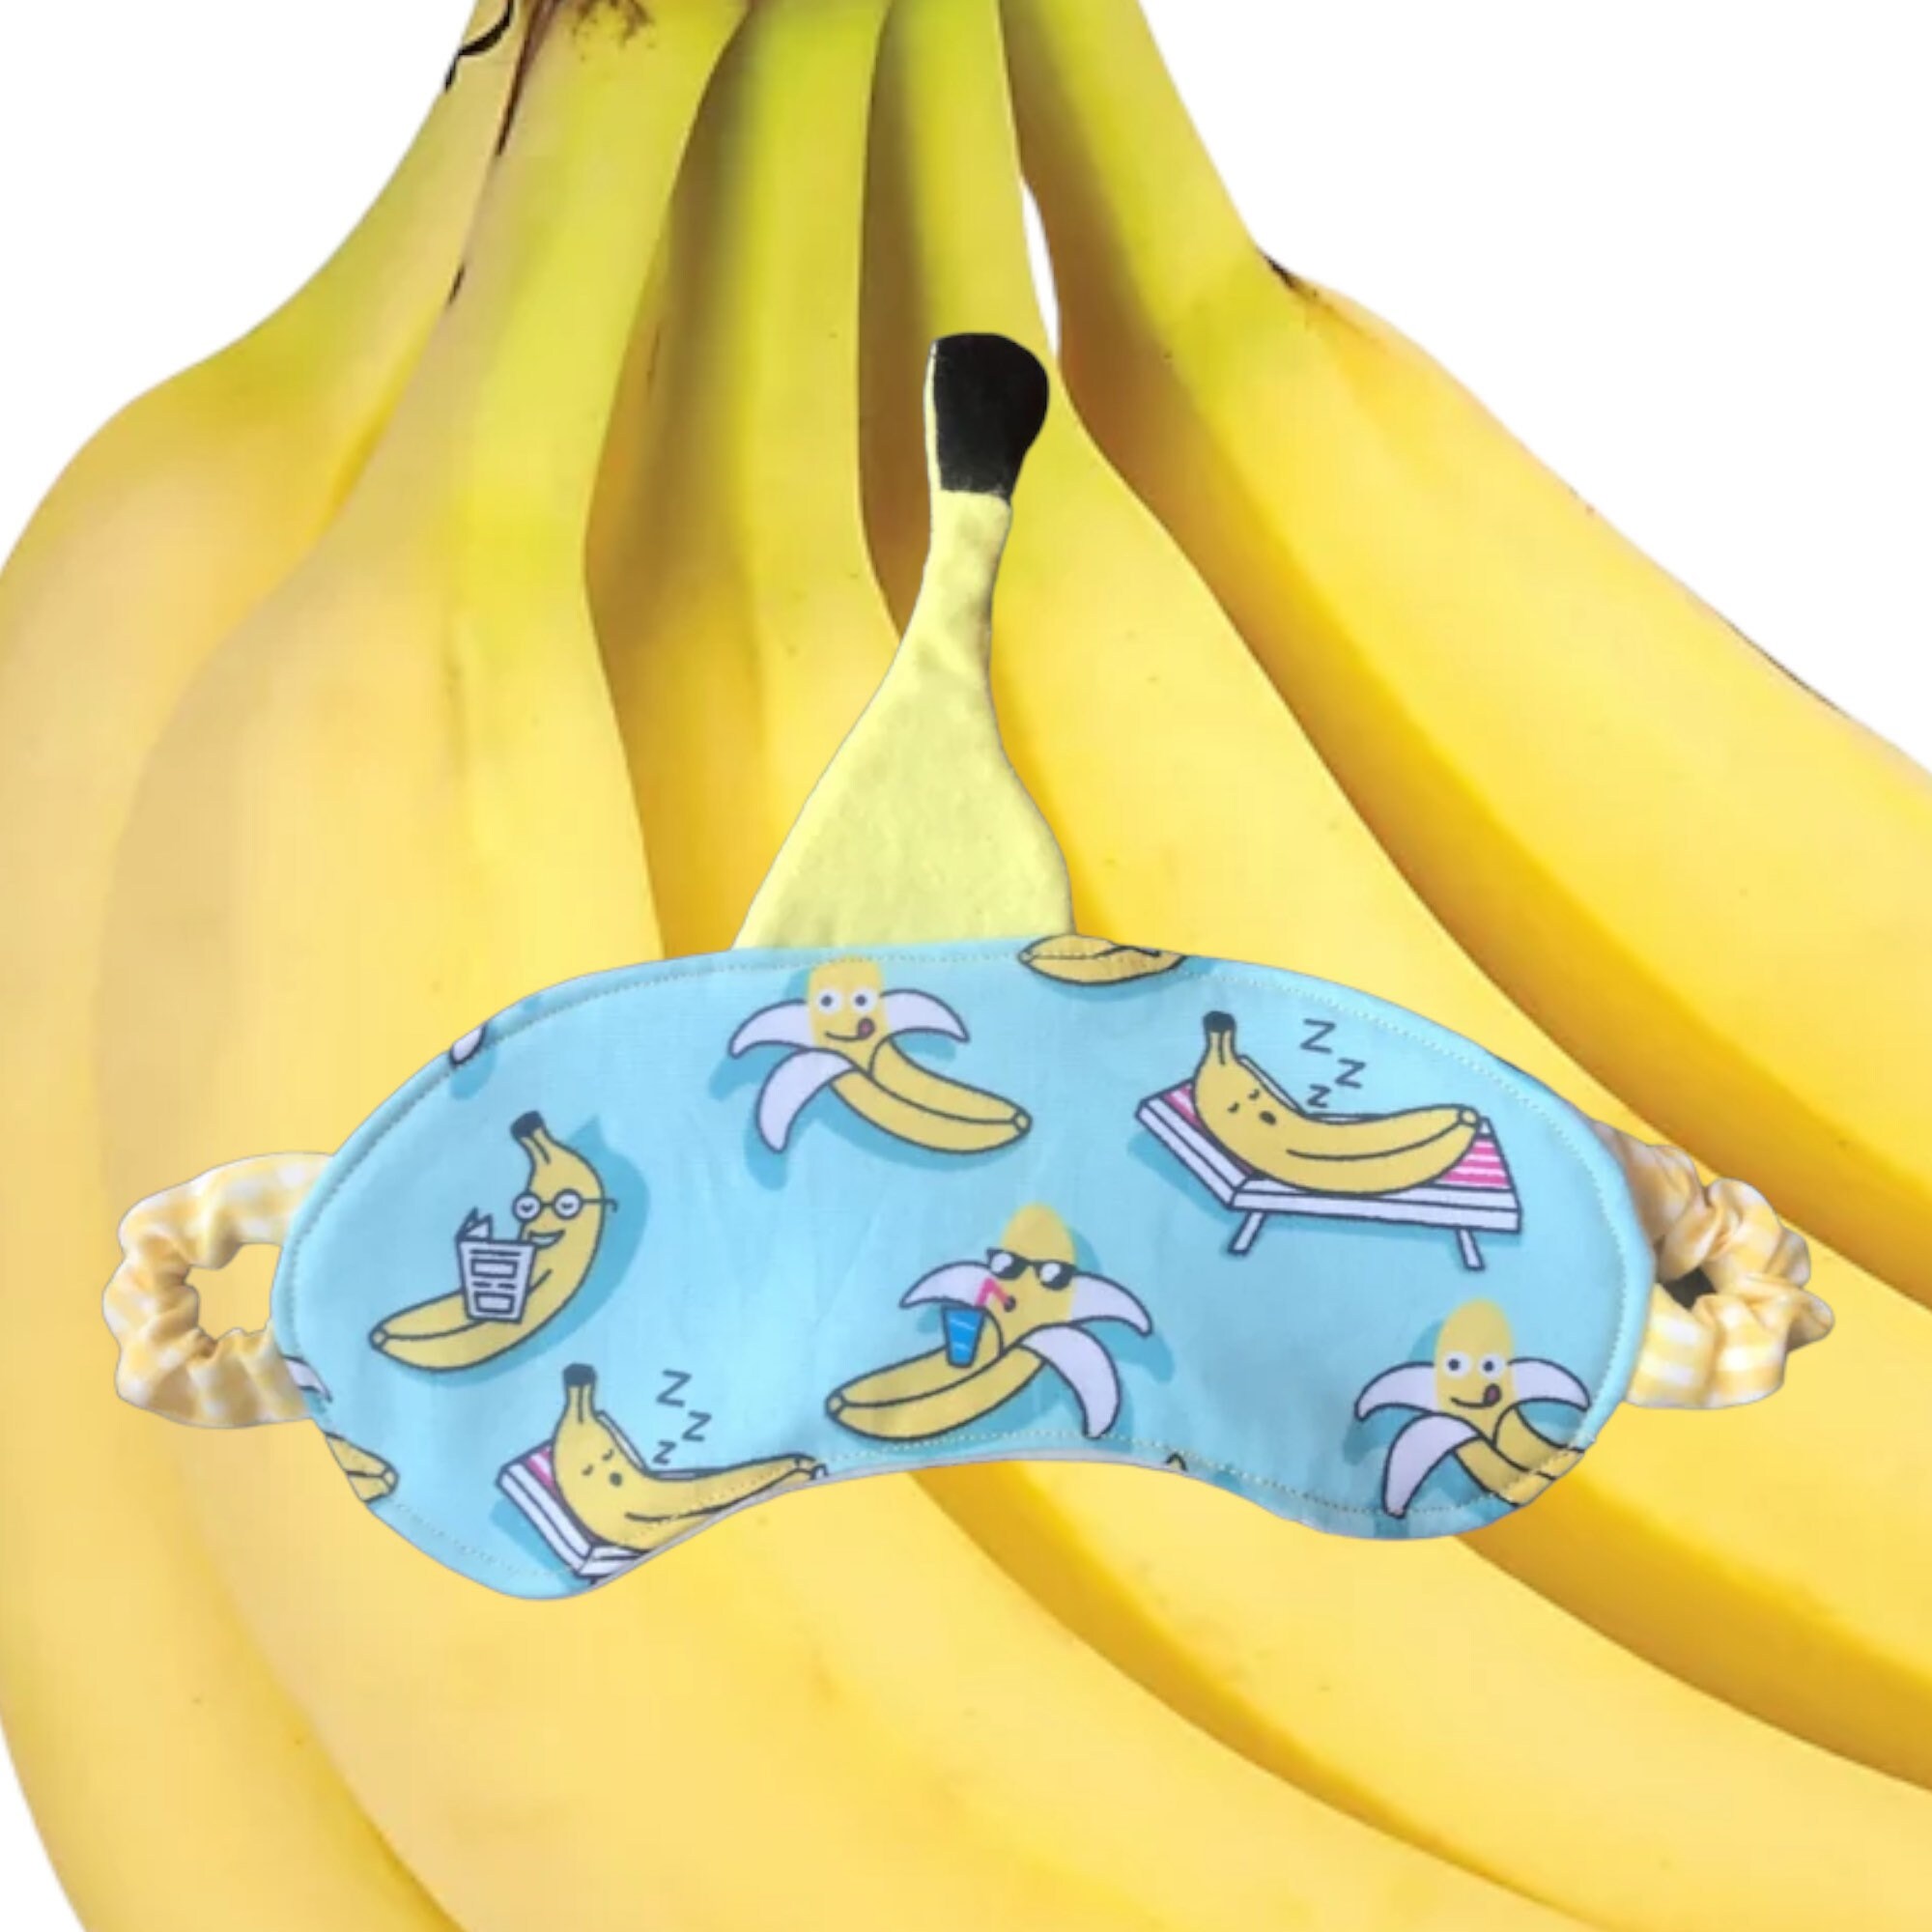 Banana Mask pic